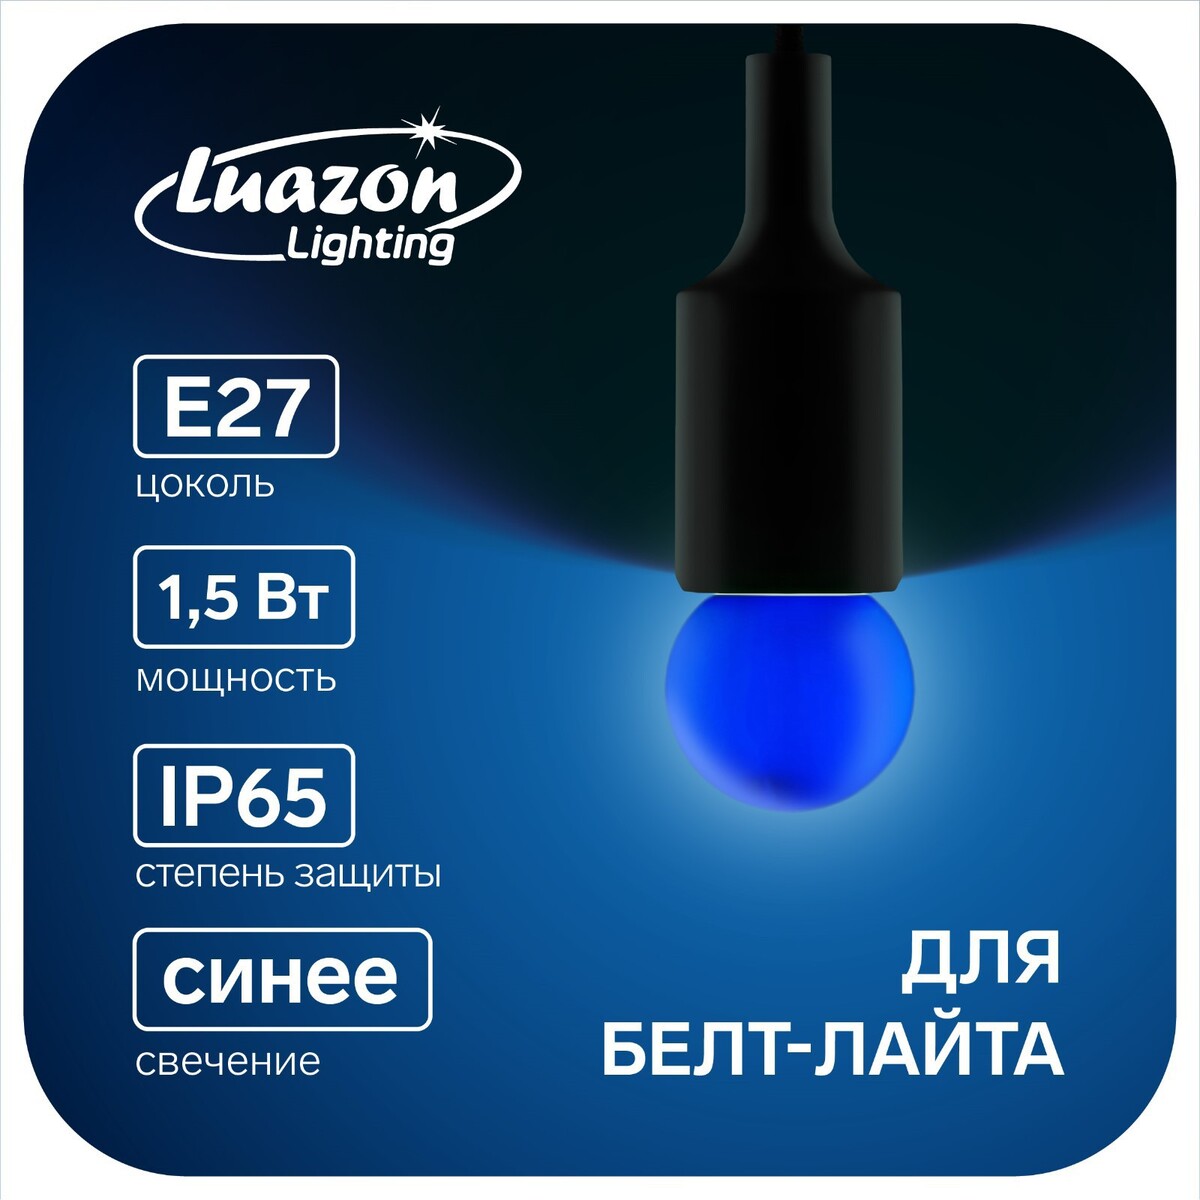 Лампа светодиодная luazon lighting, g45, е27, 1.5 вт, для белт-лайта, синяя, наб 20 шт лампа головного света avantech h27 2 12v 27w 881 series